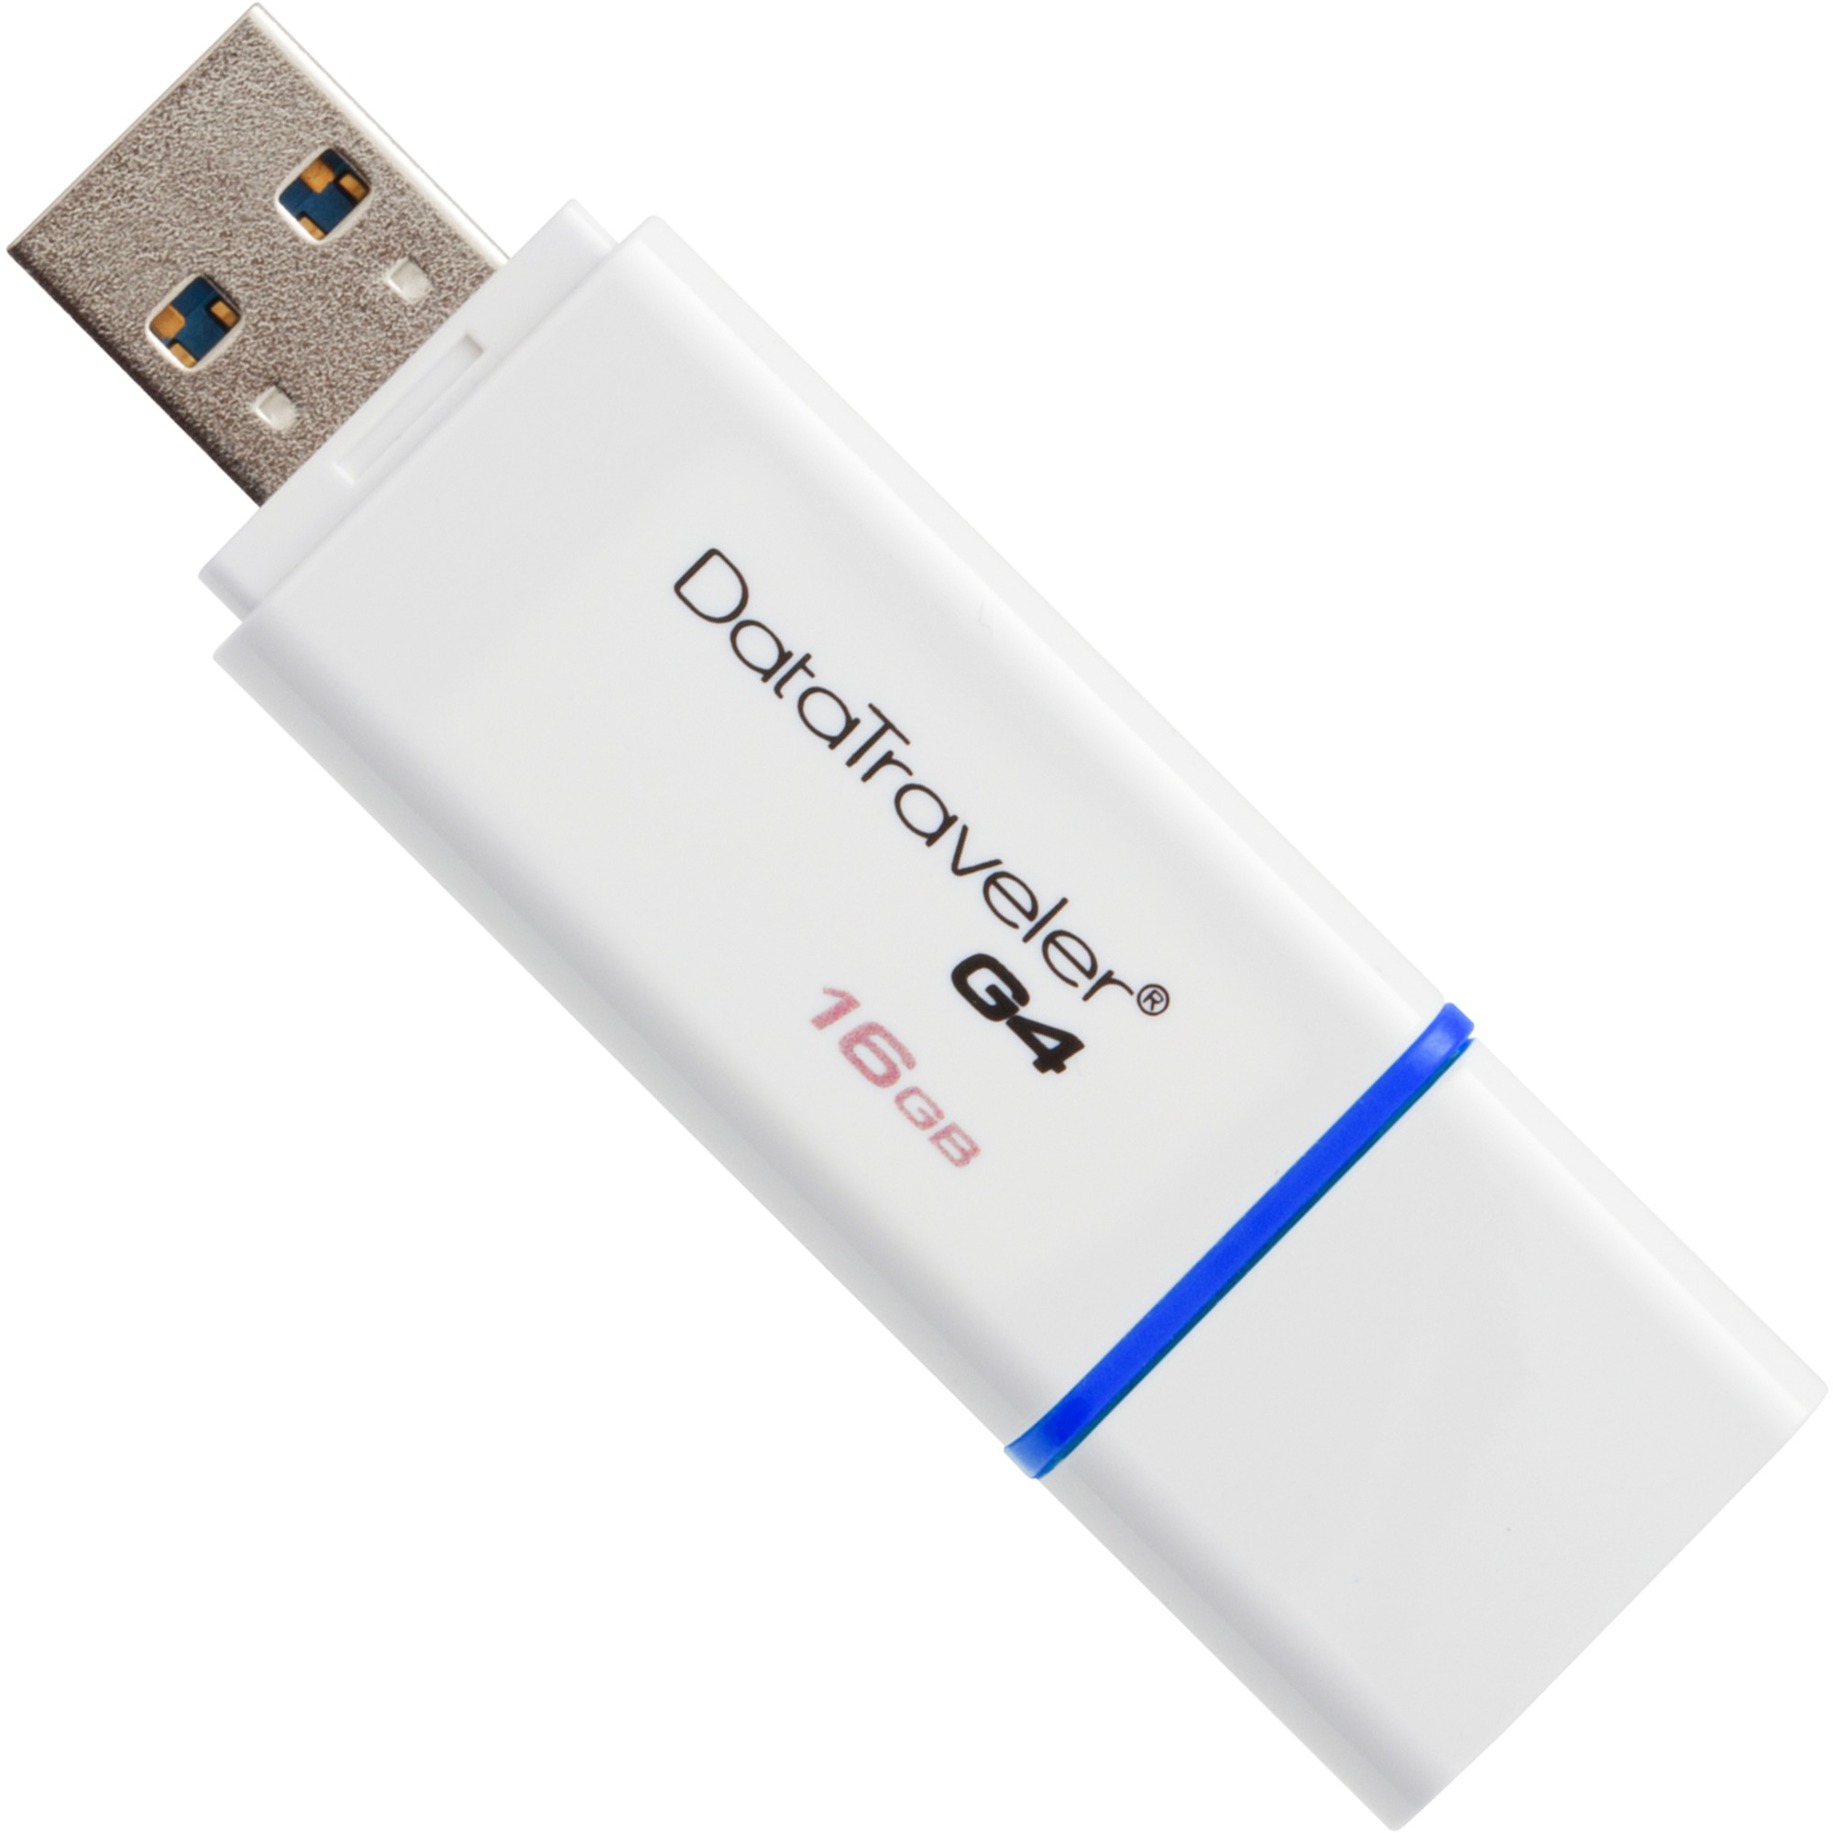 DataTraveler G4 16GB pami?? USB 3.0 (3.1 Gen 1) Z??cze USB typu A Niebieski, Bia?y, No?nik Pendrive USB